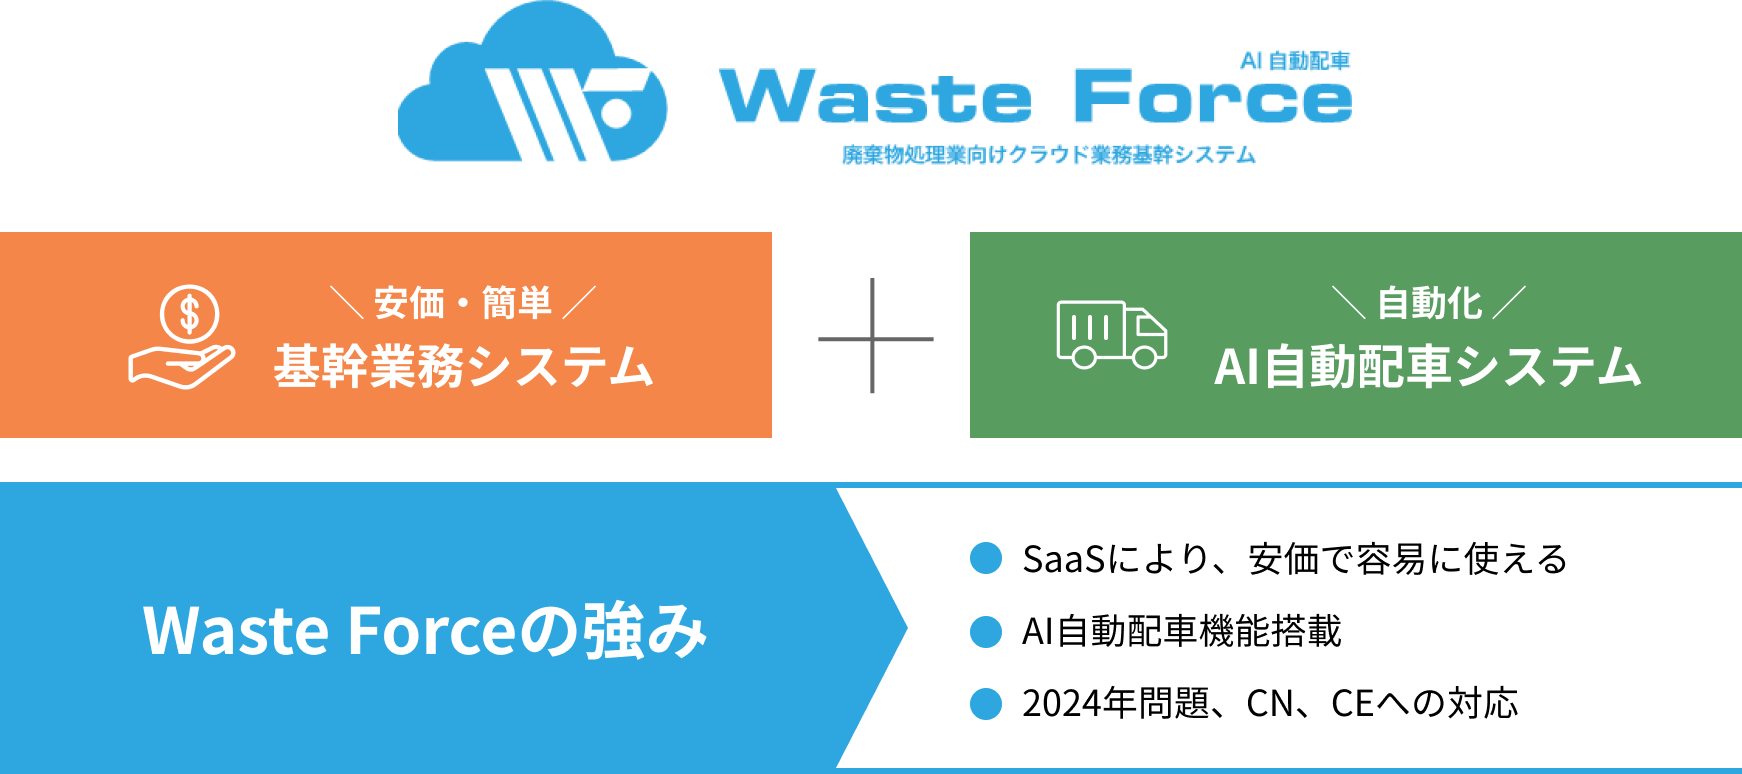 Waste Forceの強み SasSにより、安価で容易に使える。AI自動配車機能搭載。2024年問題、CN、CEへの対応。